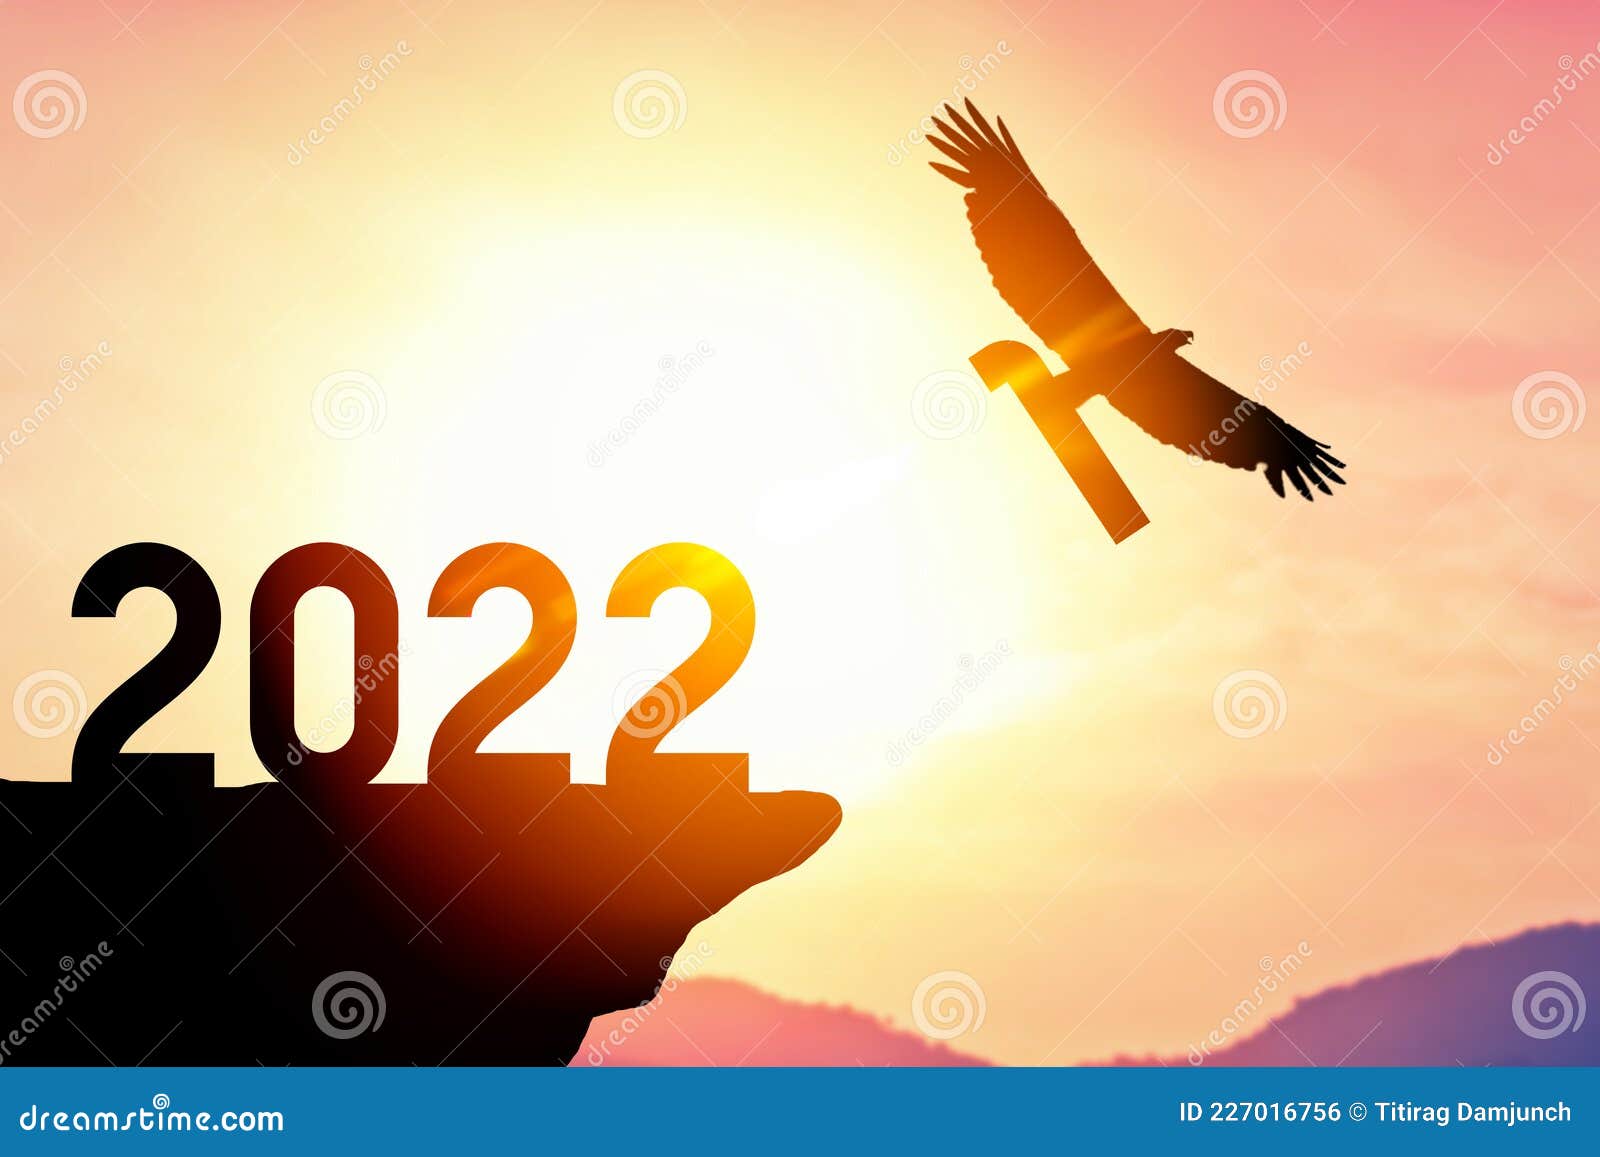 Happy New Year 2022 Jb Eagle